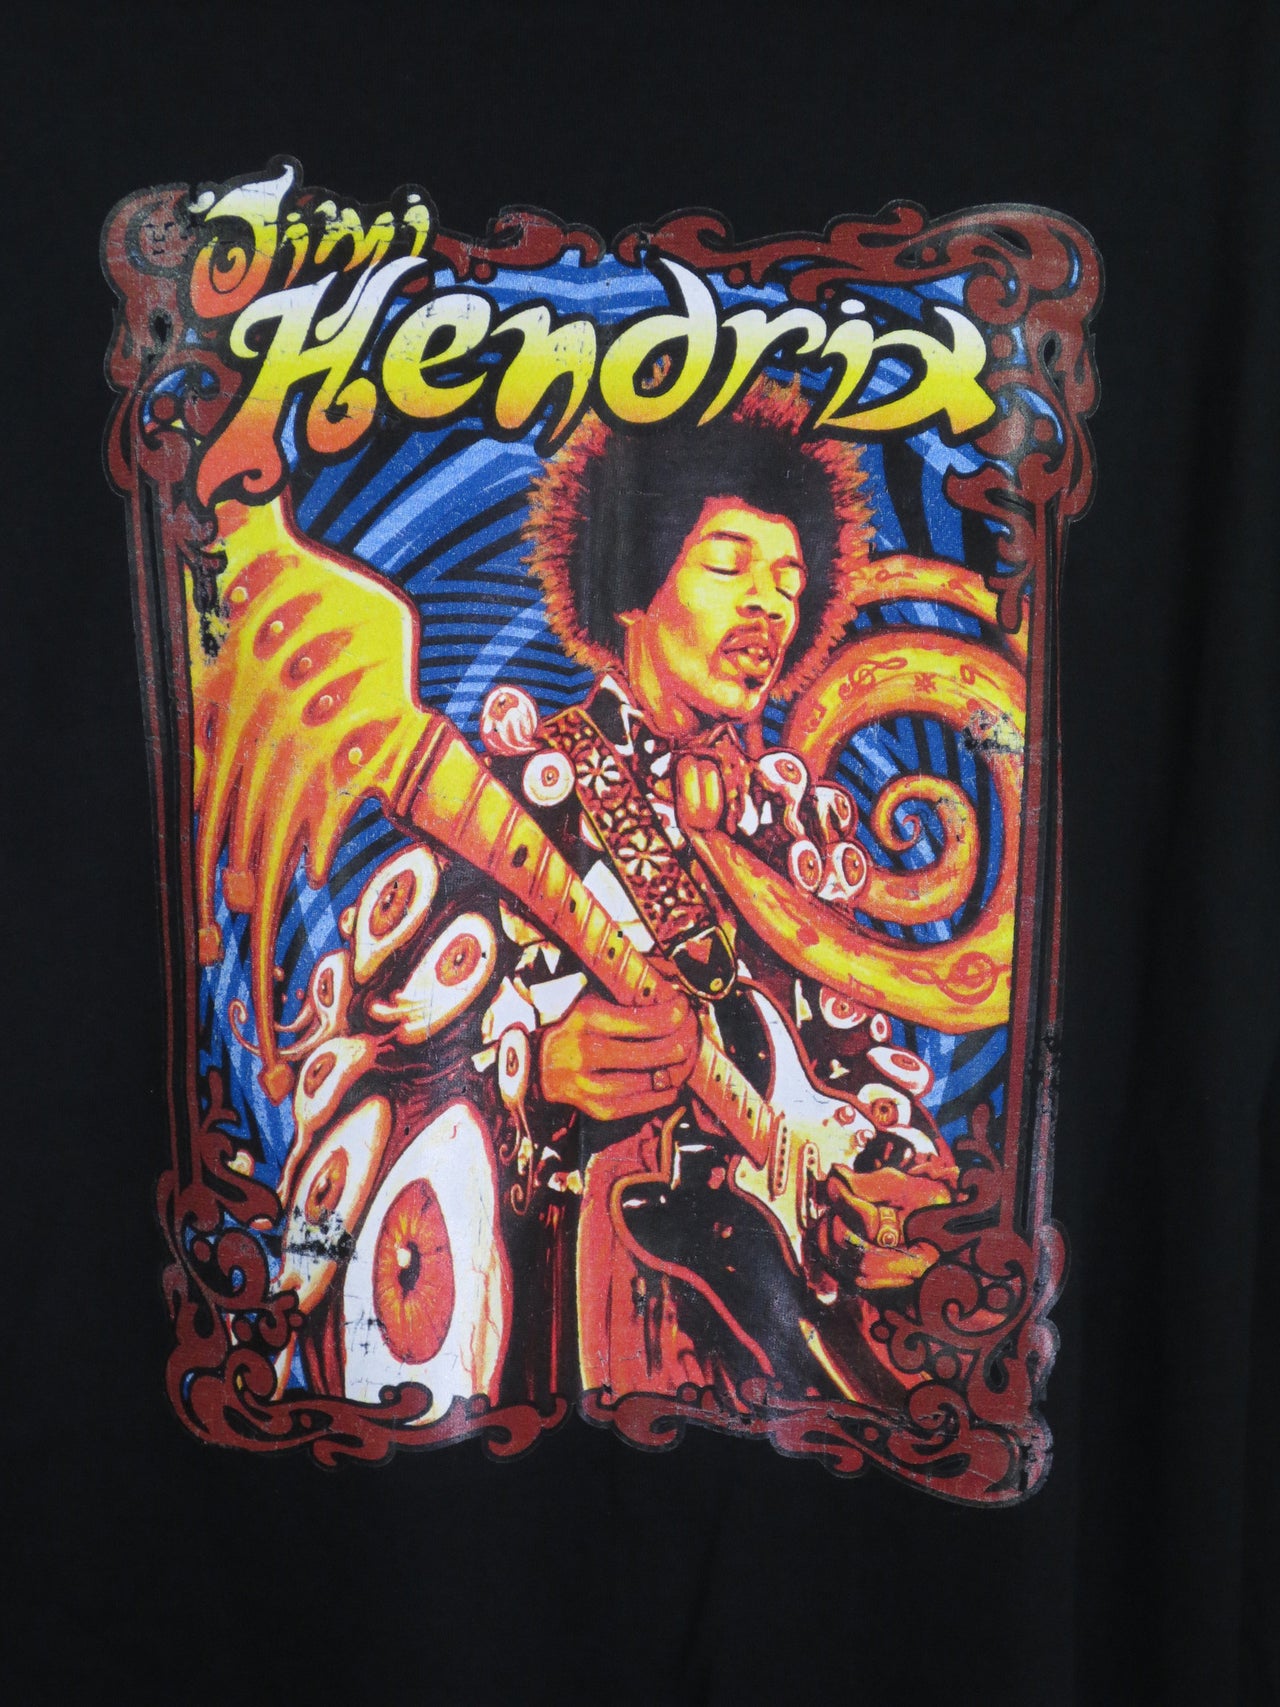 Jimi Hendrix Guitar solo tshirt - TshirtNow.net - 1